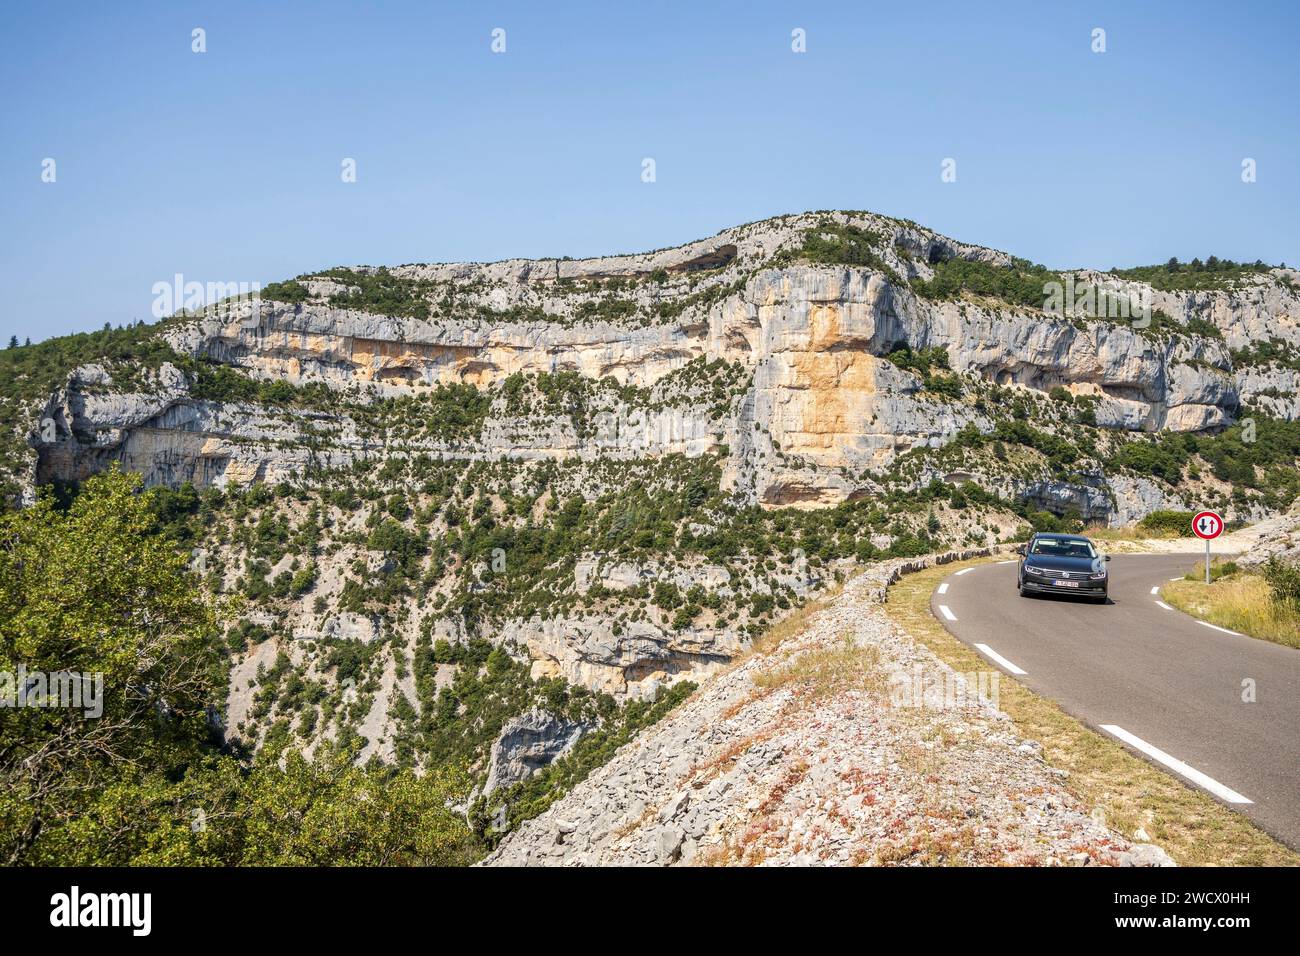 Francia, Vaucluse, Parc naturel régional du Mont Ventoux, Monieux, Gorges de la Nesque, strada D 942 tra Monieux e Villes-sur-Auzon, la roccia di Cire (853 m) sullo sfondo Foto Stock